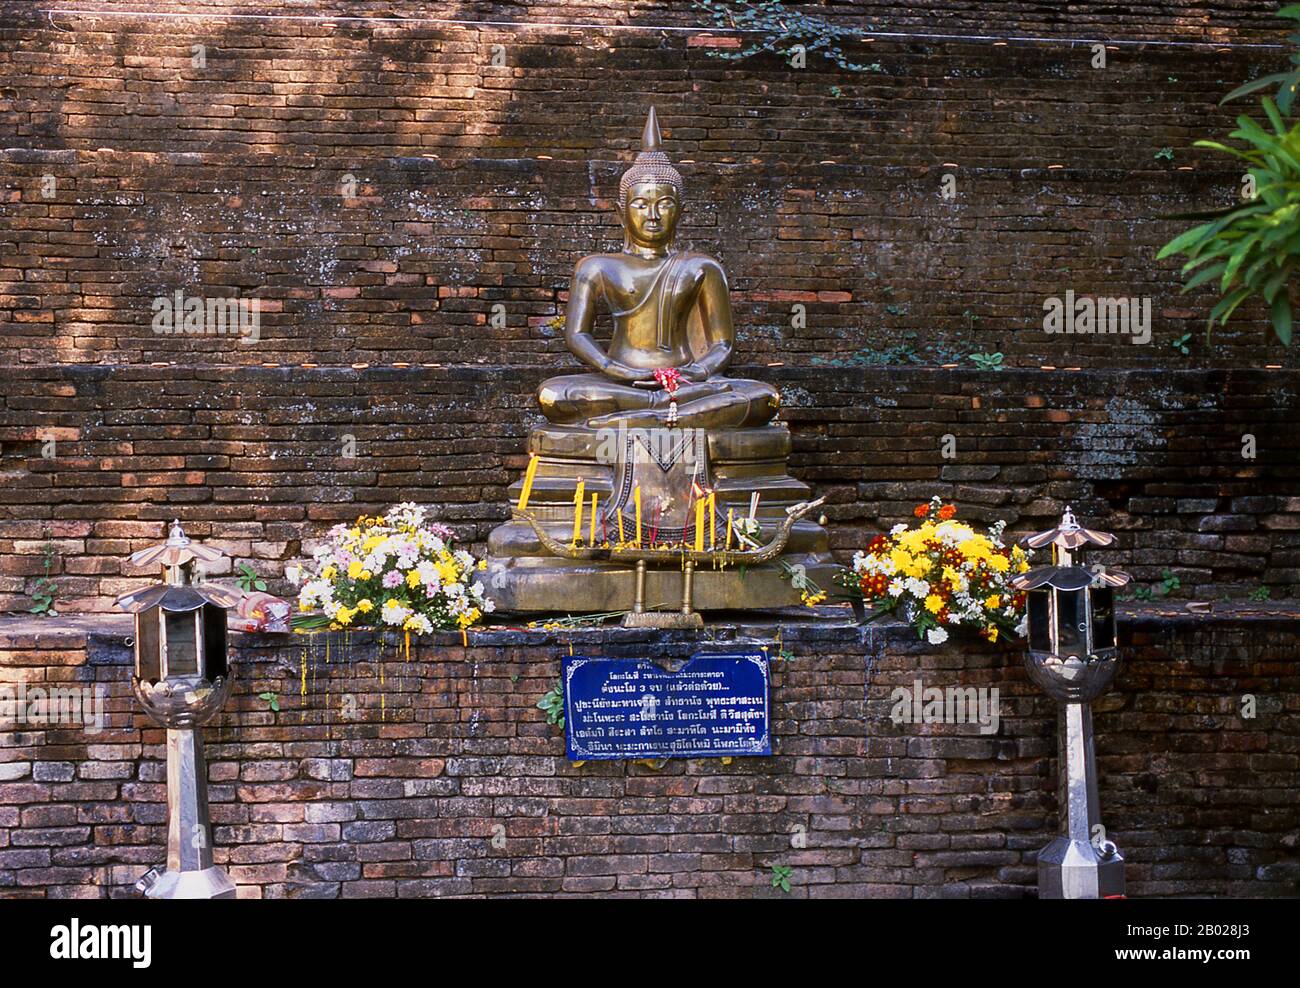 Wat Lok Moli oder "Topknot der Welt" wird von König Ku Na, dem 6. König der Mangrai-Dynastie (1263-1578), gegründet, der zwischen 1367 und 1388 von Chiang Mai aus das Königreich Lan Na regierte. Es war wahrscheinlich ein königlicher Tempel, da die nördliche Seite der Stadt damals ein königliches Revier war; sicherlich genoss das Heiligtum eine lange und enge Verbindung mit den Mangrai-Herrschern. Laut einer Mitteilung am Südeingang des Tempels lud König Ku Na eine Gruppe von zehn aus Birma stammenden Monstern ein, in Chiang Mai zu leben und Lok Moli als Residenz für sie zu bieten. Der riesige Chedi t Stockfoto